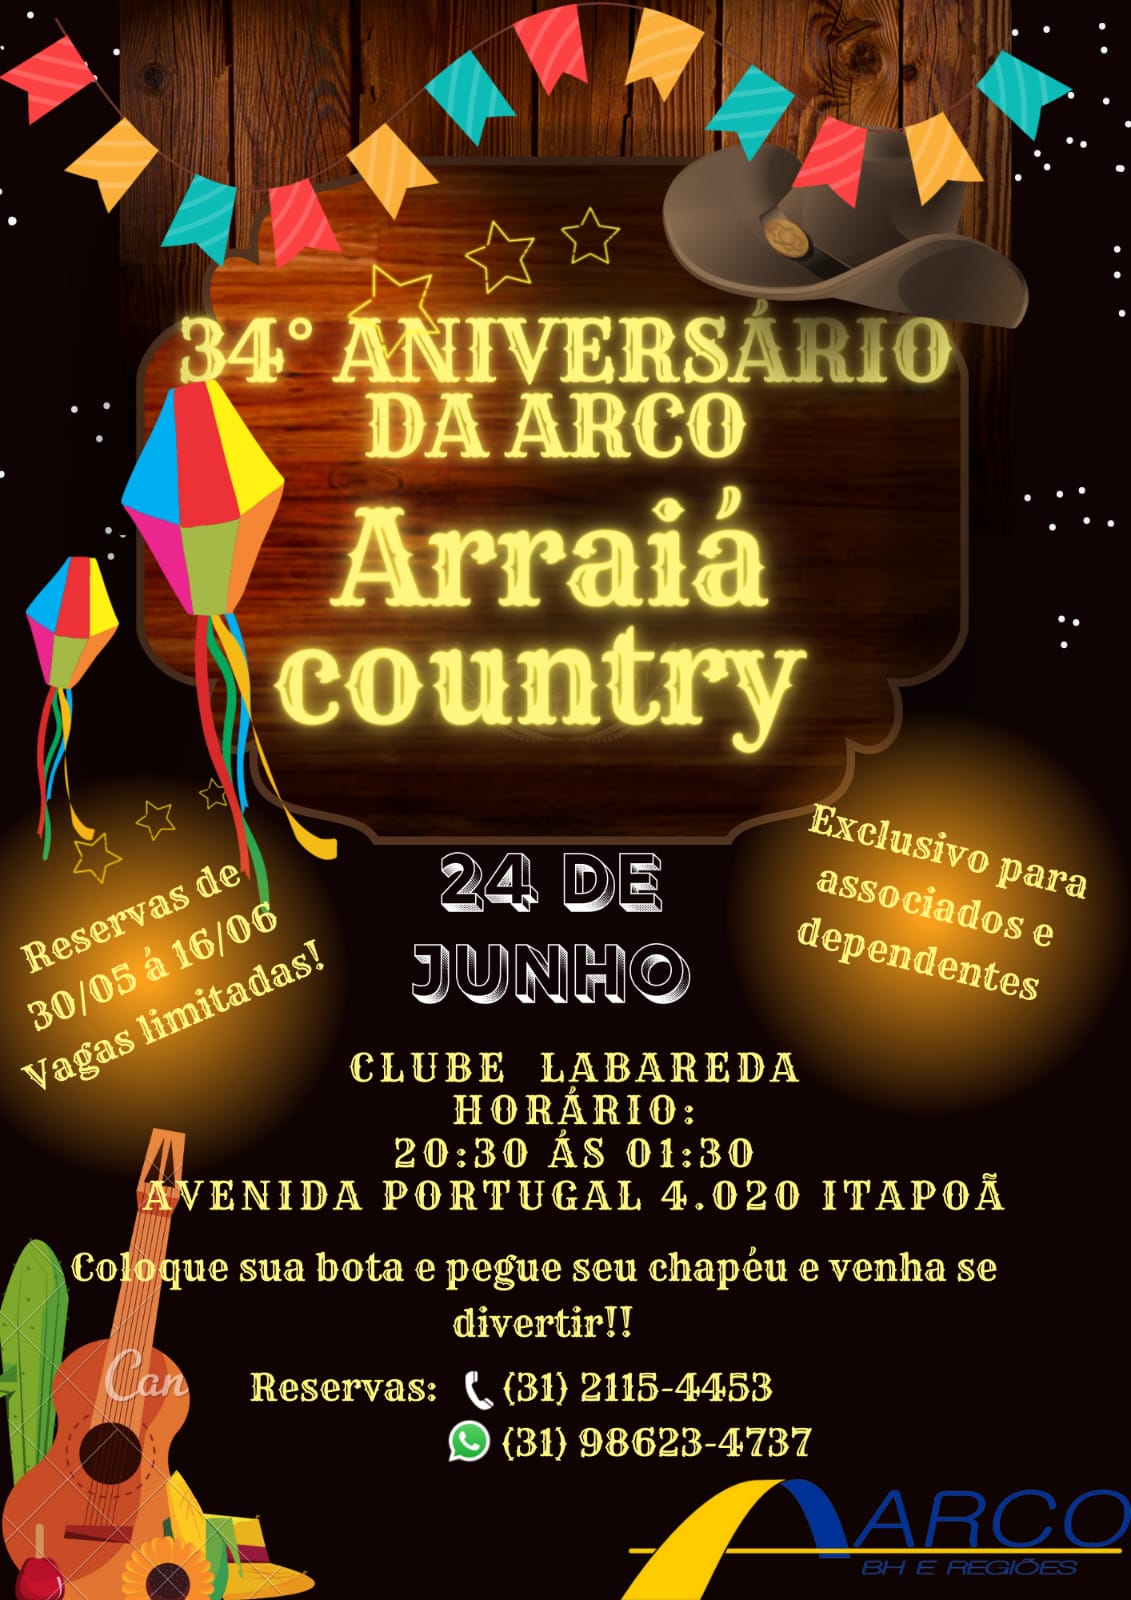 34 ANIVERSARIO DA ARCO! ARRAIA COUNTRY.